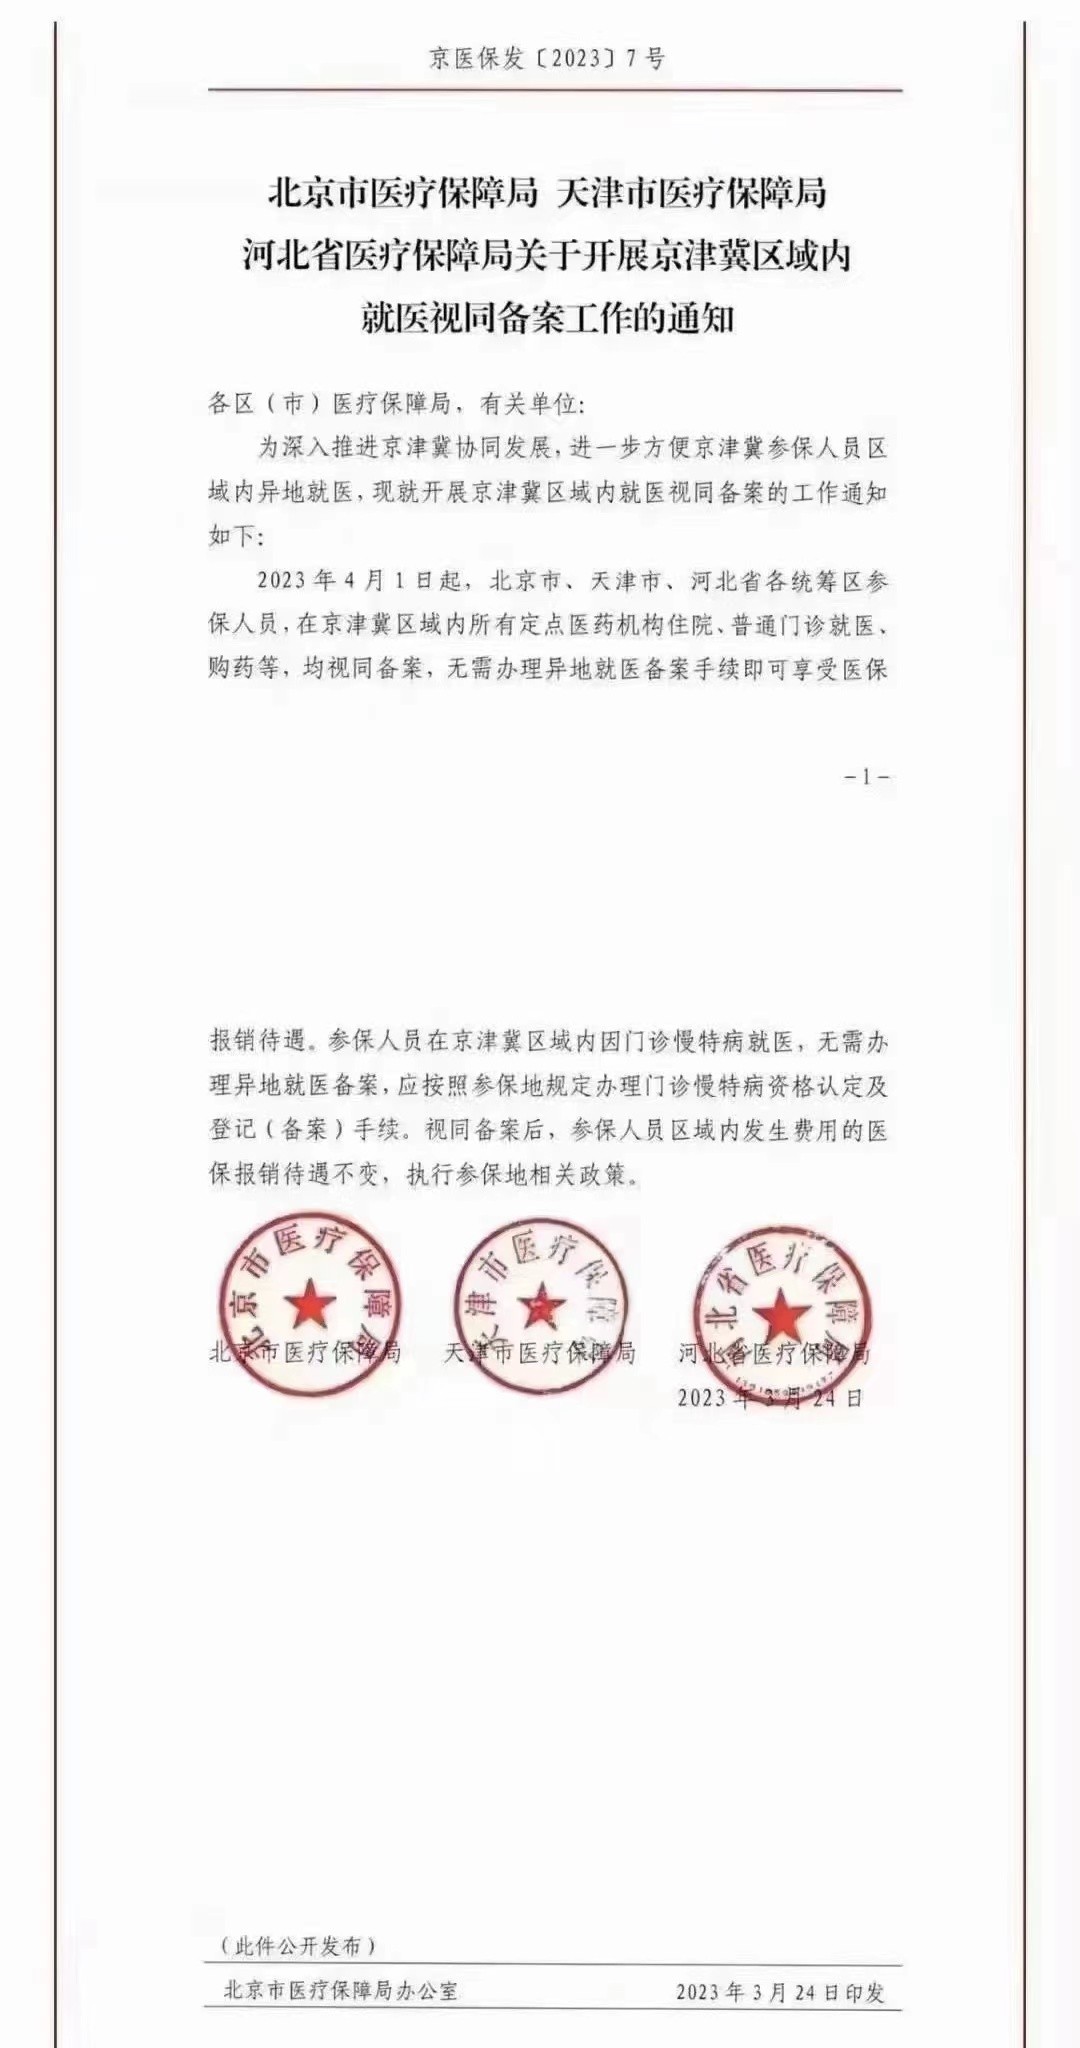 便民资讯丨4月1日起,京津冀三地全面取消异地就医备案